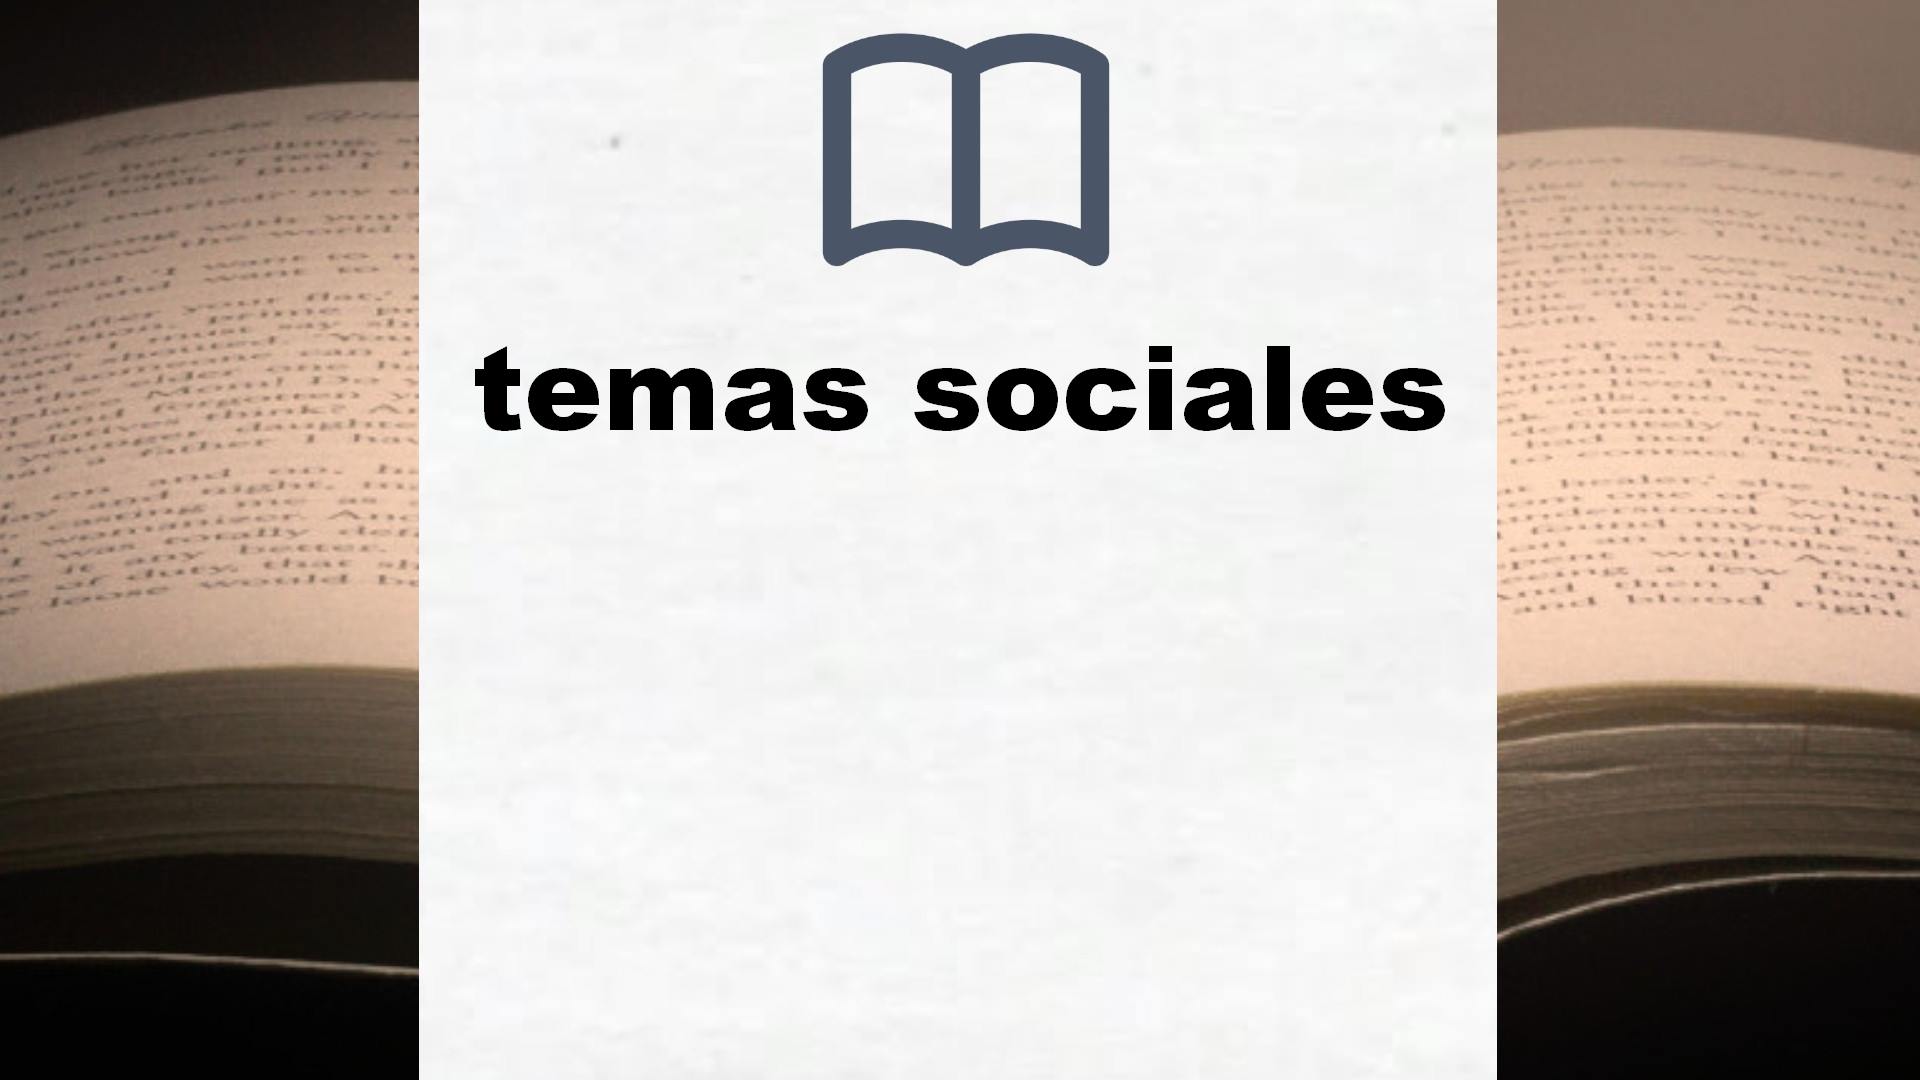 Libros sobre temas sociales